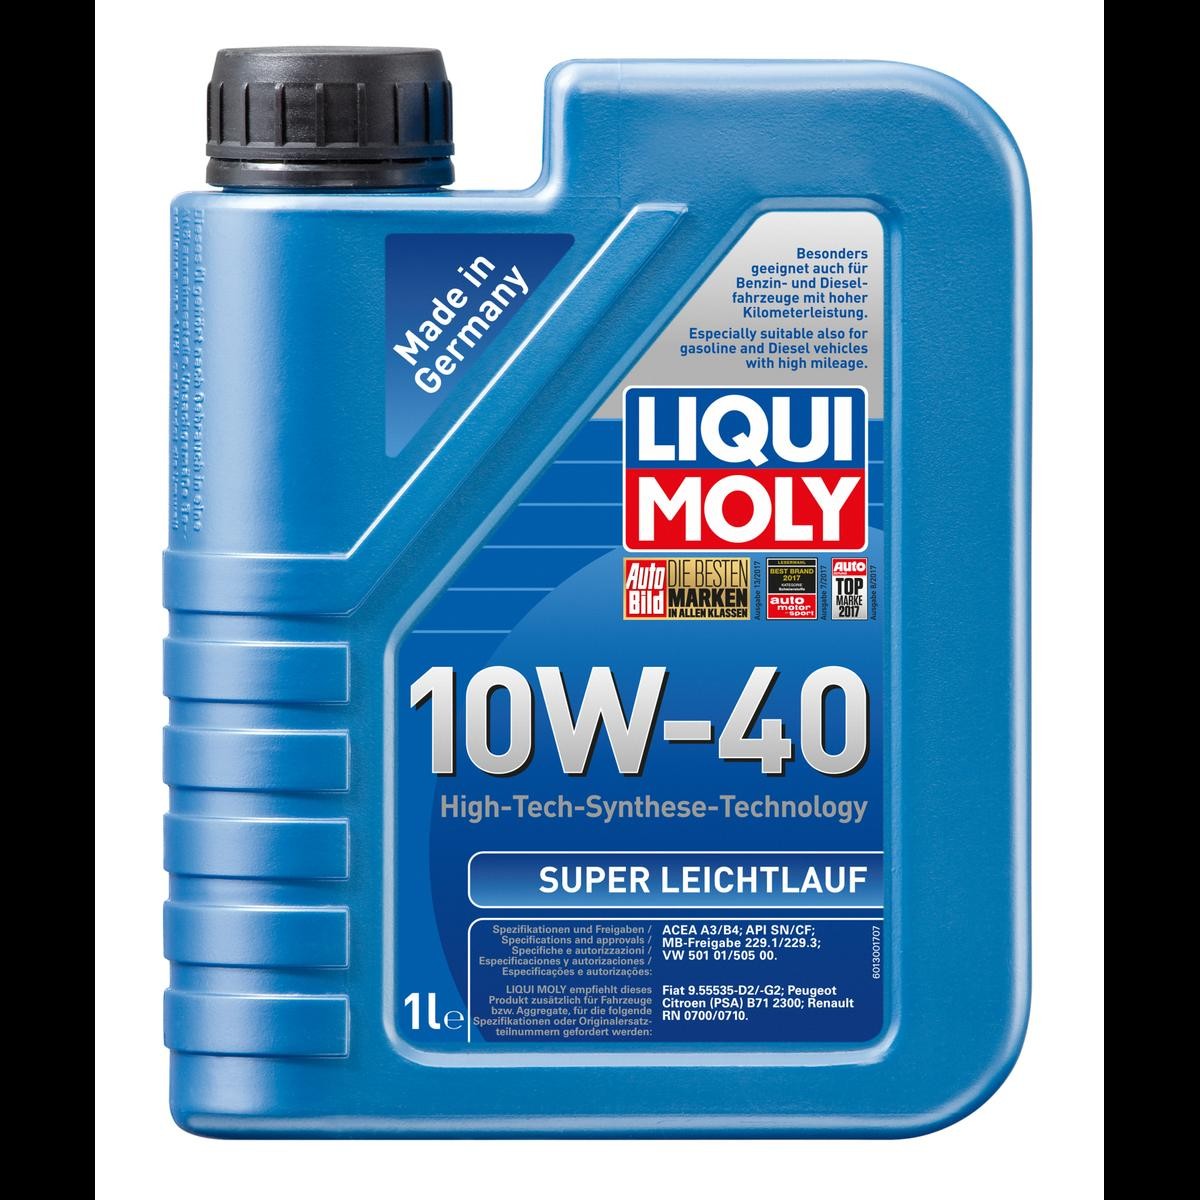 LIQUI MOLY Leichtlauf, Super 1300 Engine oil 10W-40, 1l, Part Synthetic Oil